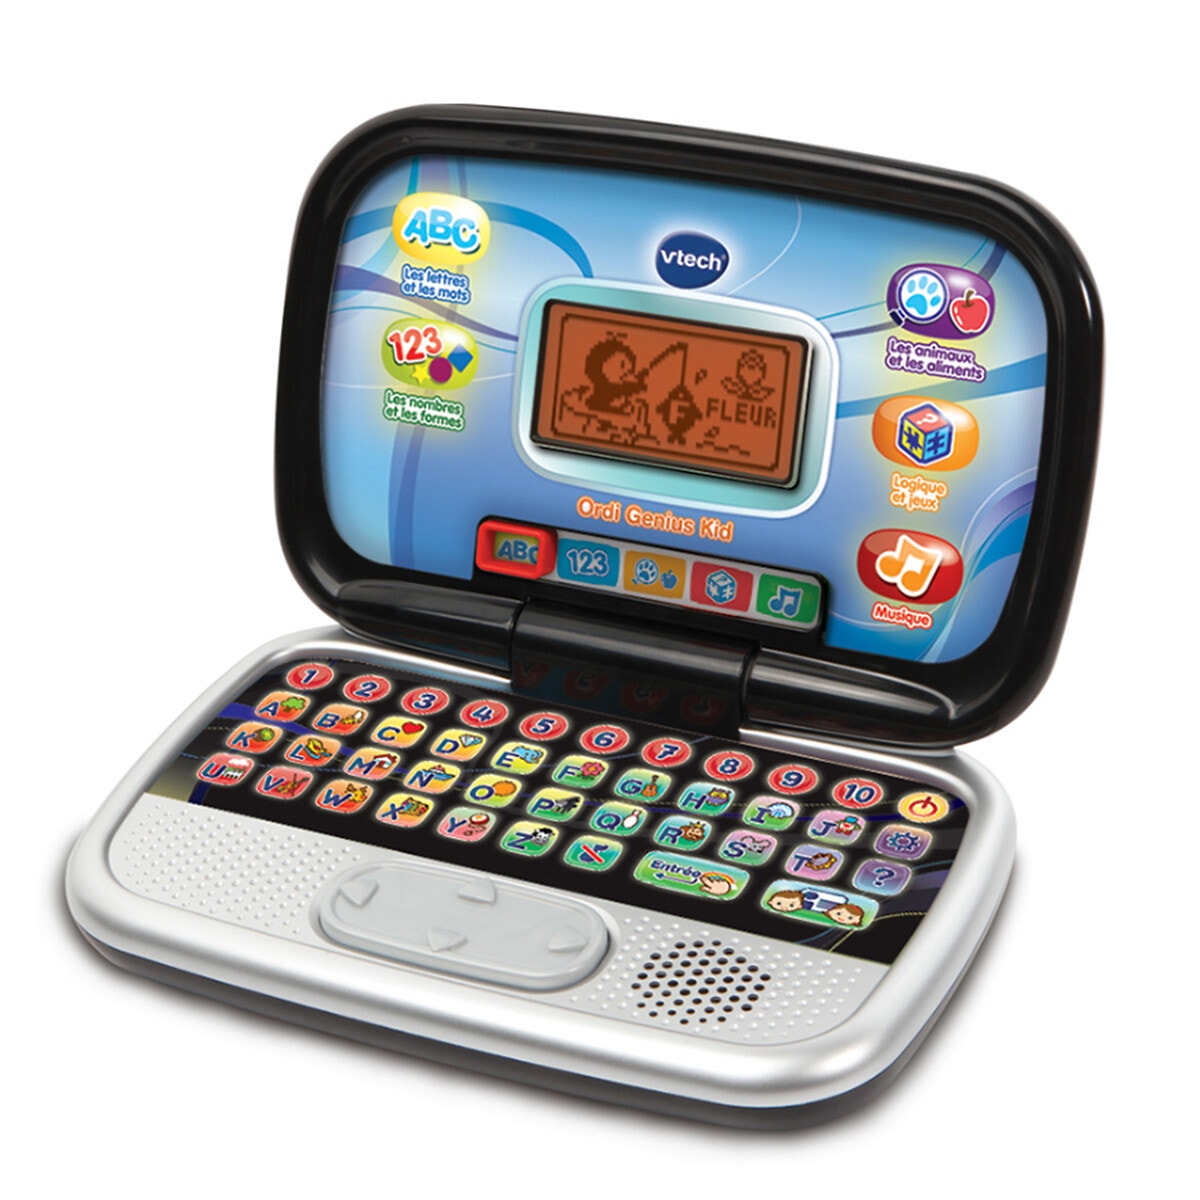 Genio / Genio Max - Ordinateurs portables pour enfants